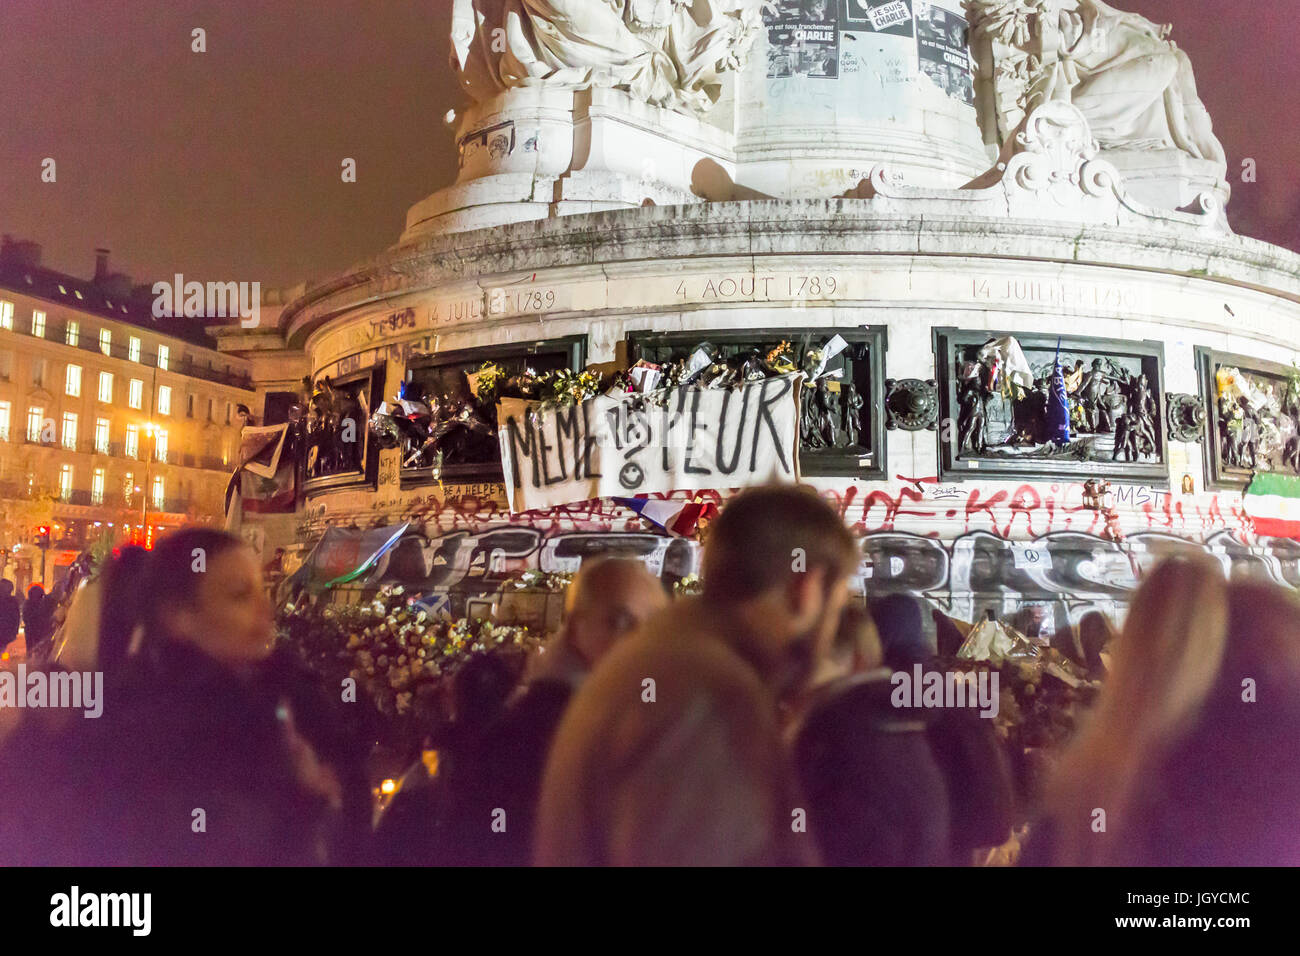 Die Masse an Republique, keine Angst même Pas Peur. Spontane Hommage an die Opfer der Terroranschläge in Paris, den 13. November 2015. Stockfoto